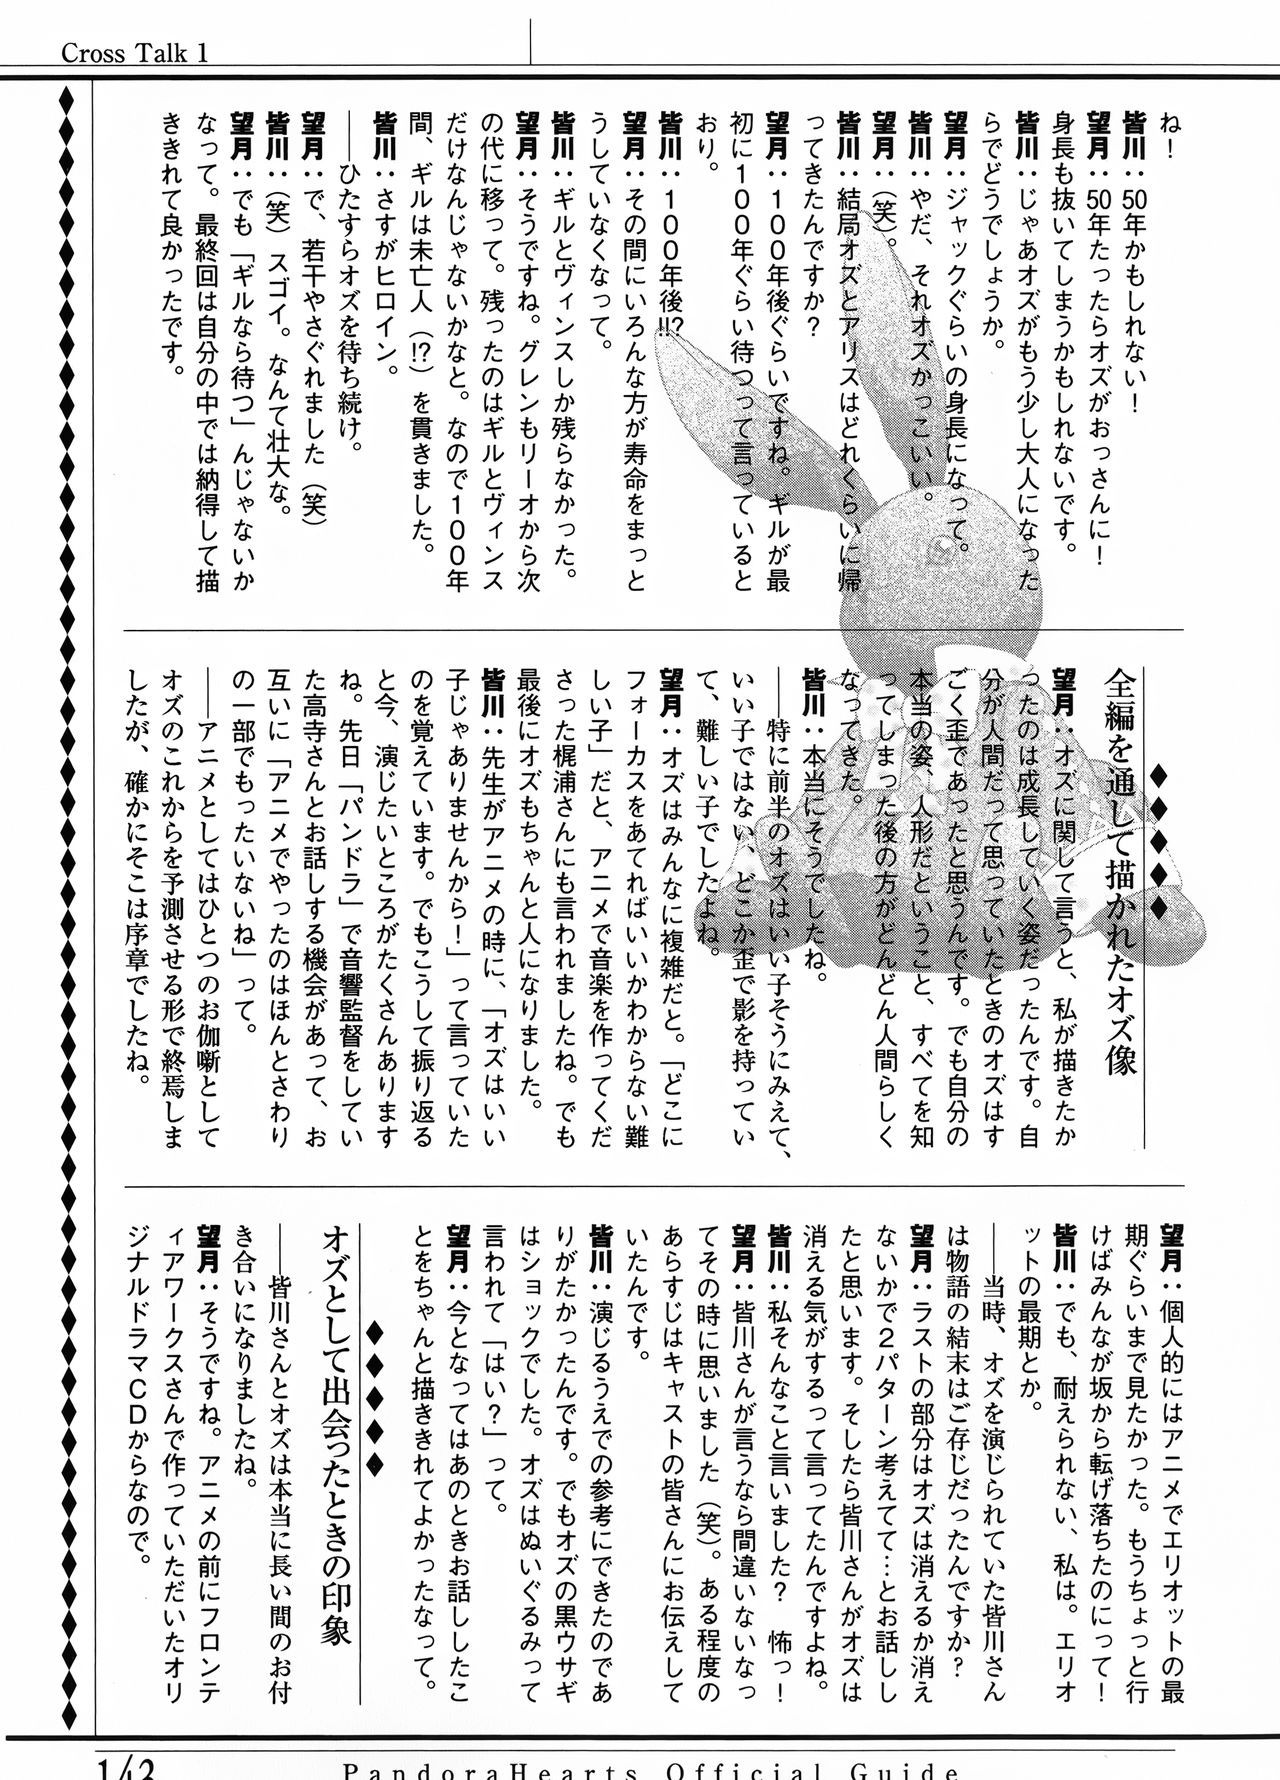 Pandora Hearts Guidebook 24+1: Last Dance パンドラハーツ オフィシャルガイド 24 + 1 ~Last Dance! 147